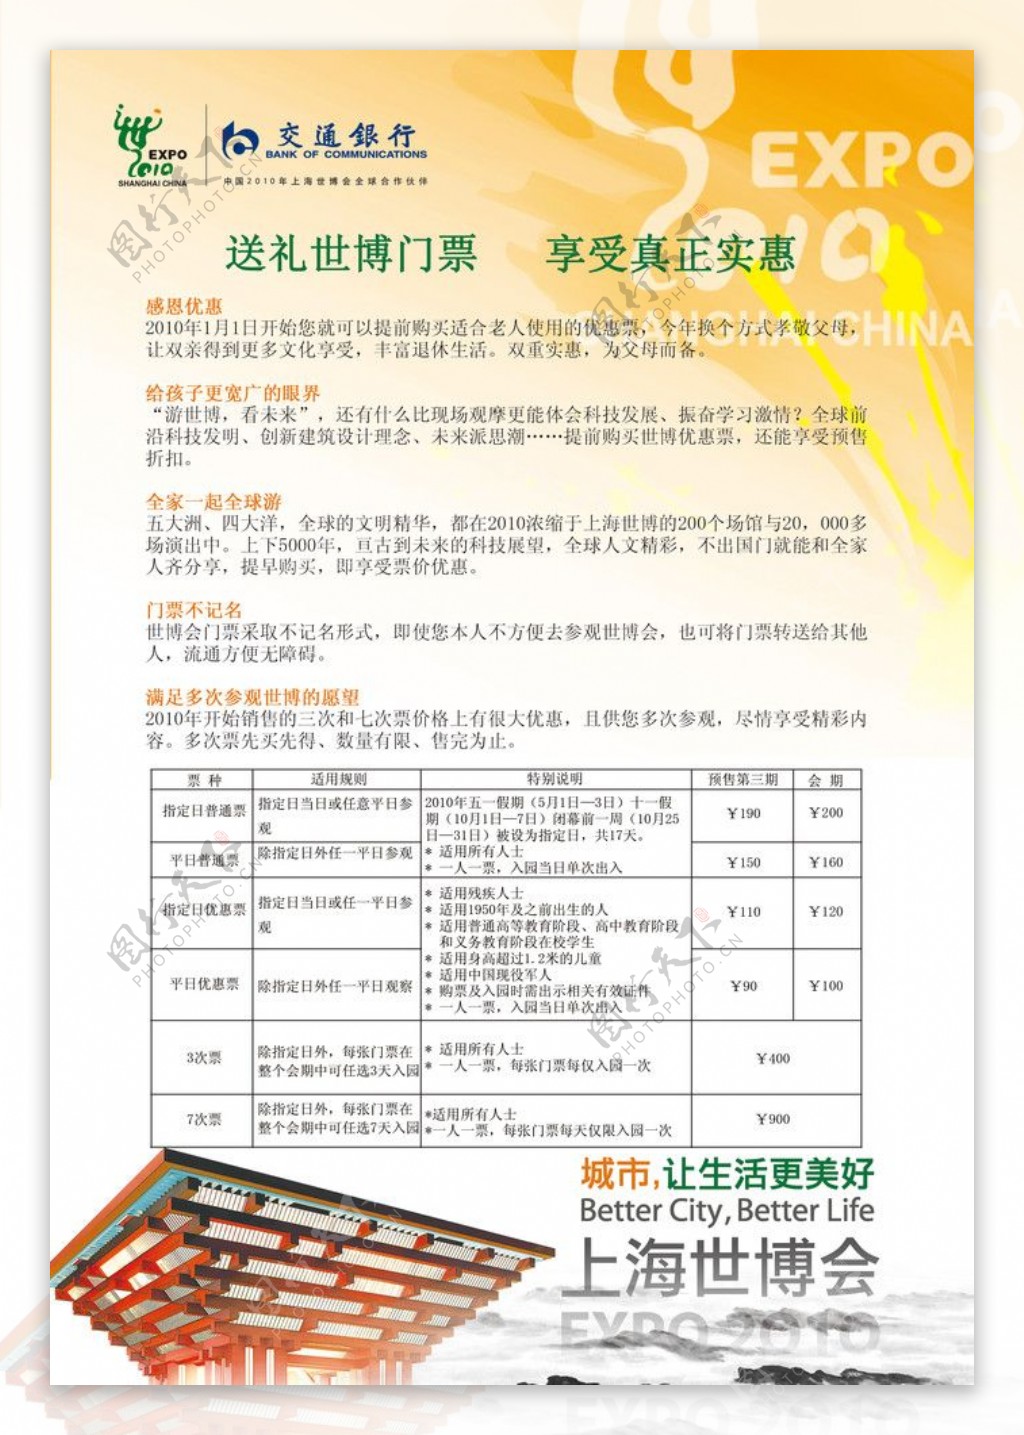 上海世博会票价及优惠活动展板图片